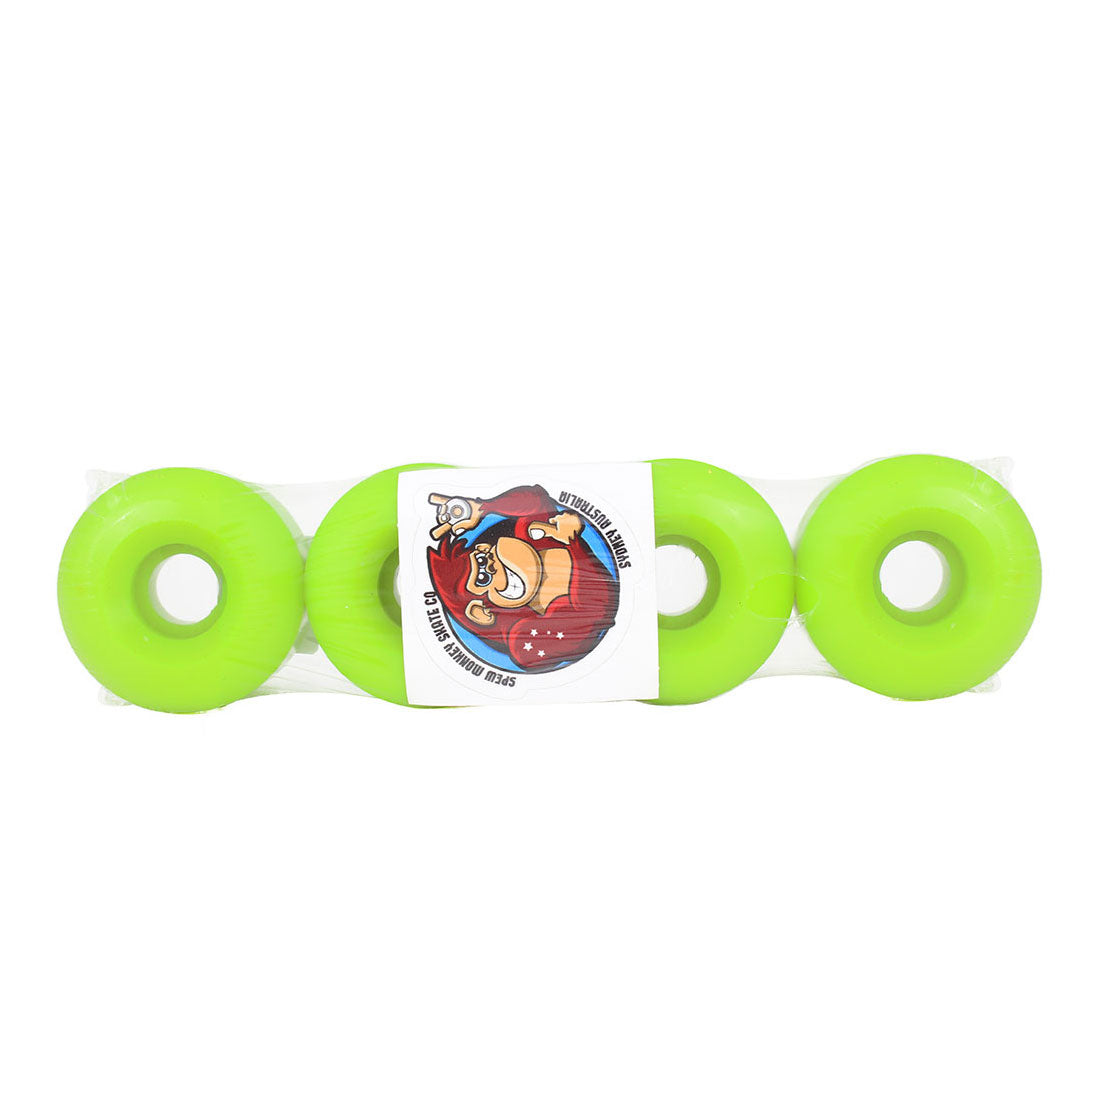 Spew Monkey #1s 54mm 97a Classic Wheels 4pk - Lime Green Skateboard Wheels